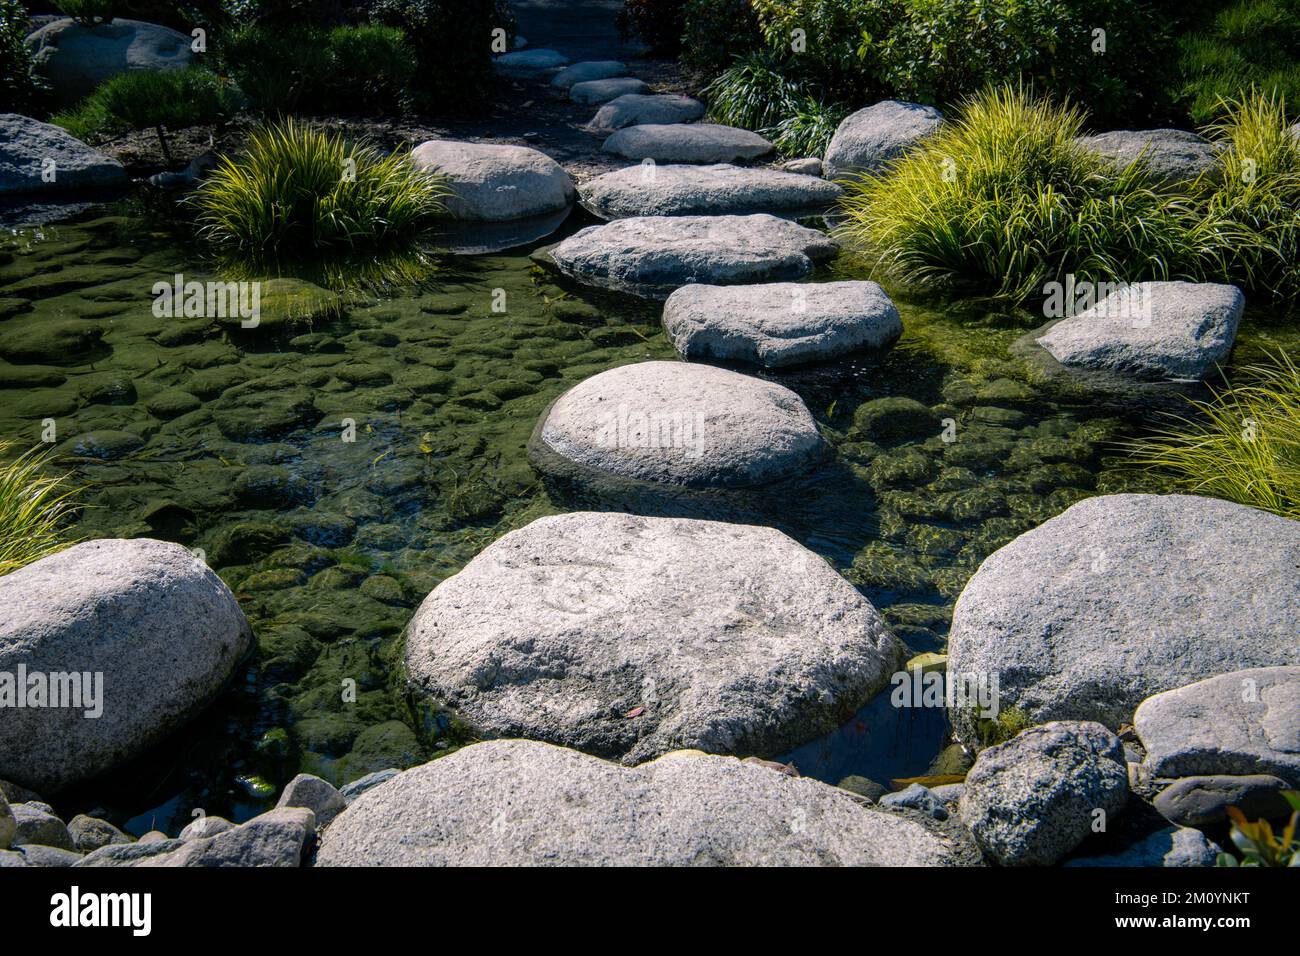 Friedliche Szene mit Sprungsteinen, die einen klaren Fluss in einem Zen-Garten durchqueren Stockfoto